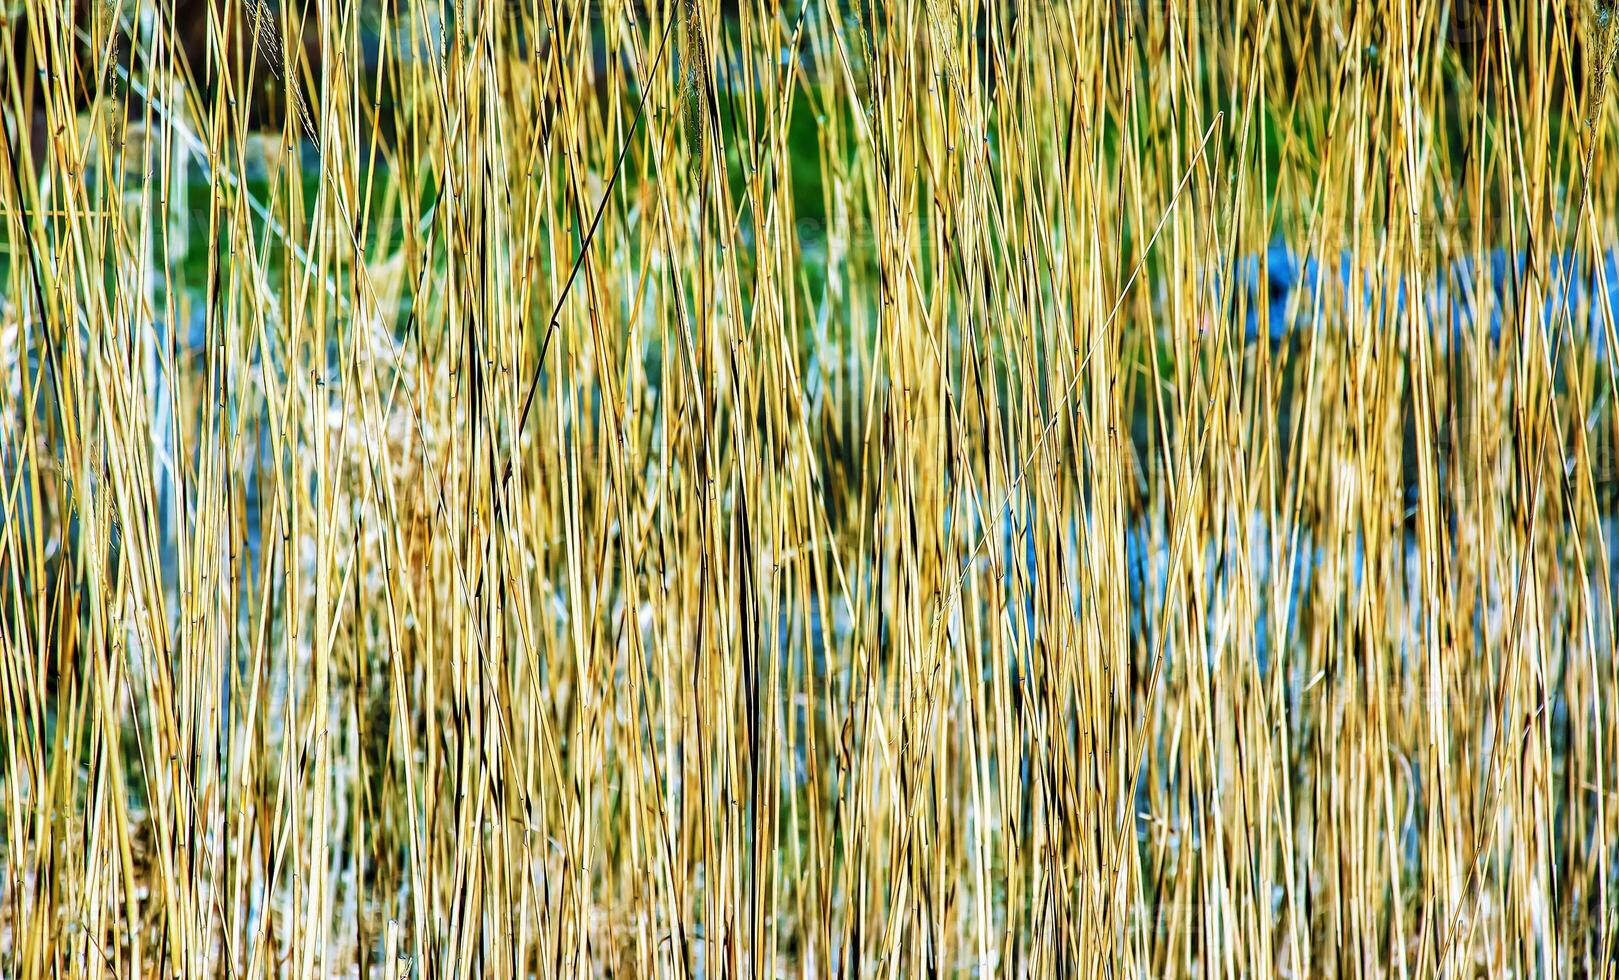 sec herbe Contexte. sec panicules de miscanthus sinensis balancement dans le vent dans de bonne heure printemps photo